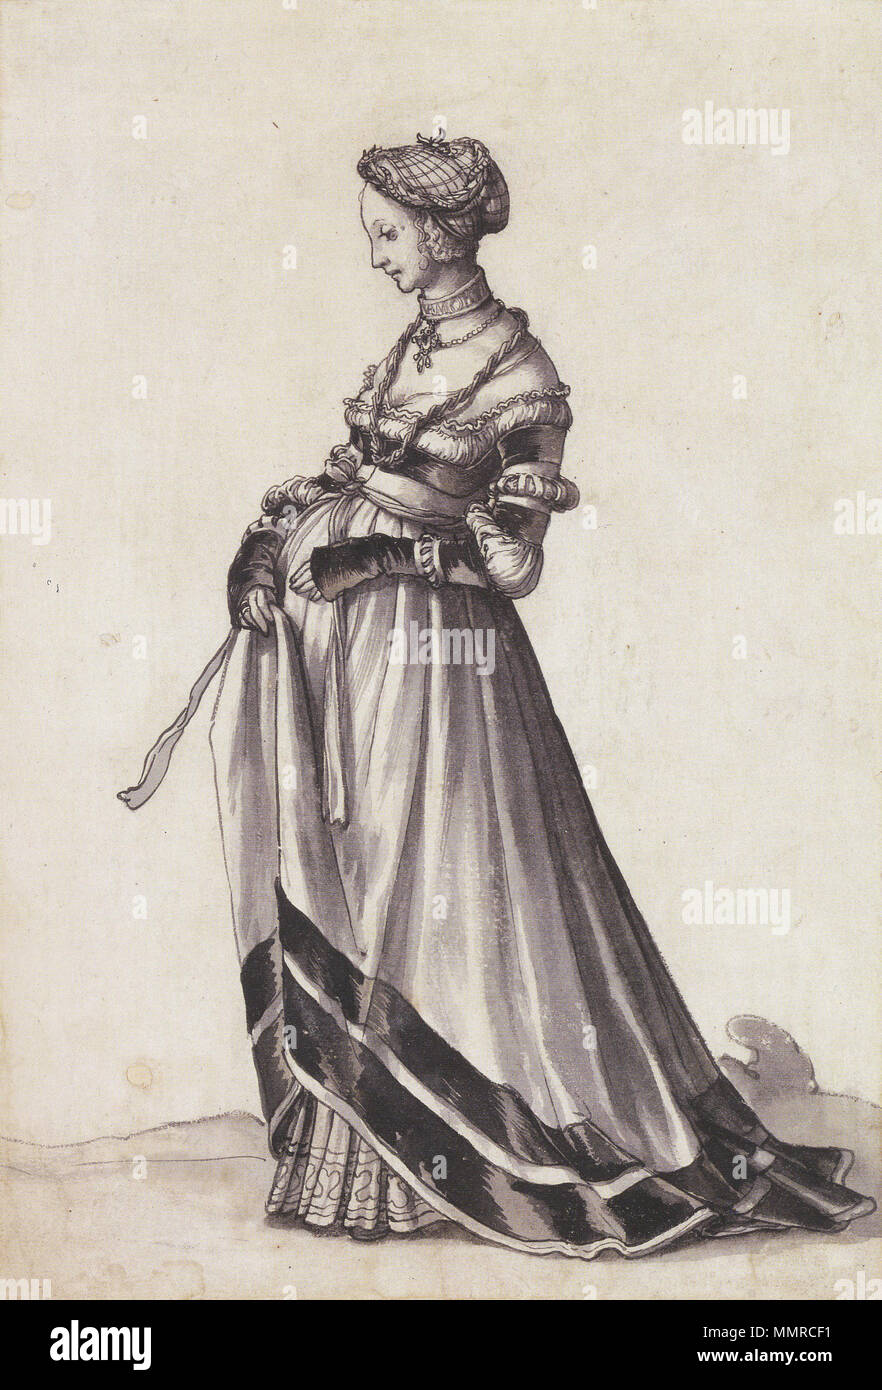 Anglais : femme de Bâle s'est tourné vers la gauche, le costume de l'étude.  Encre et plume, pinceau et Lavis, gris 29,1 × 19,7 cm, Kunstmuseum de Bâle.  Le but d'Holbein's